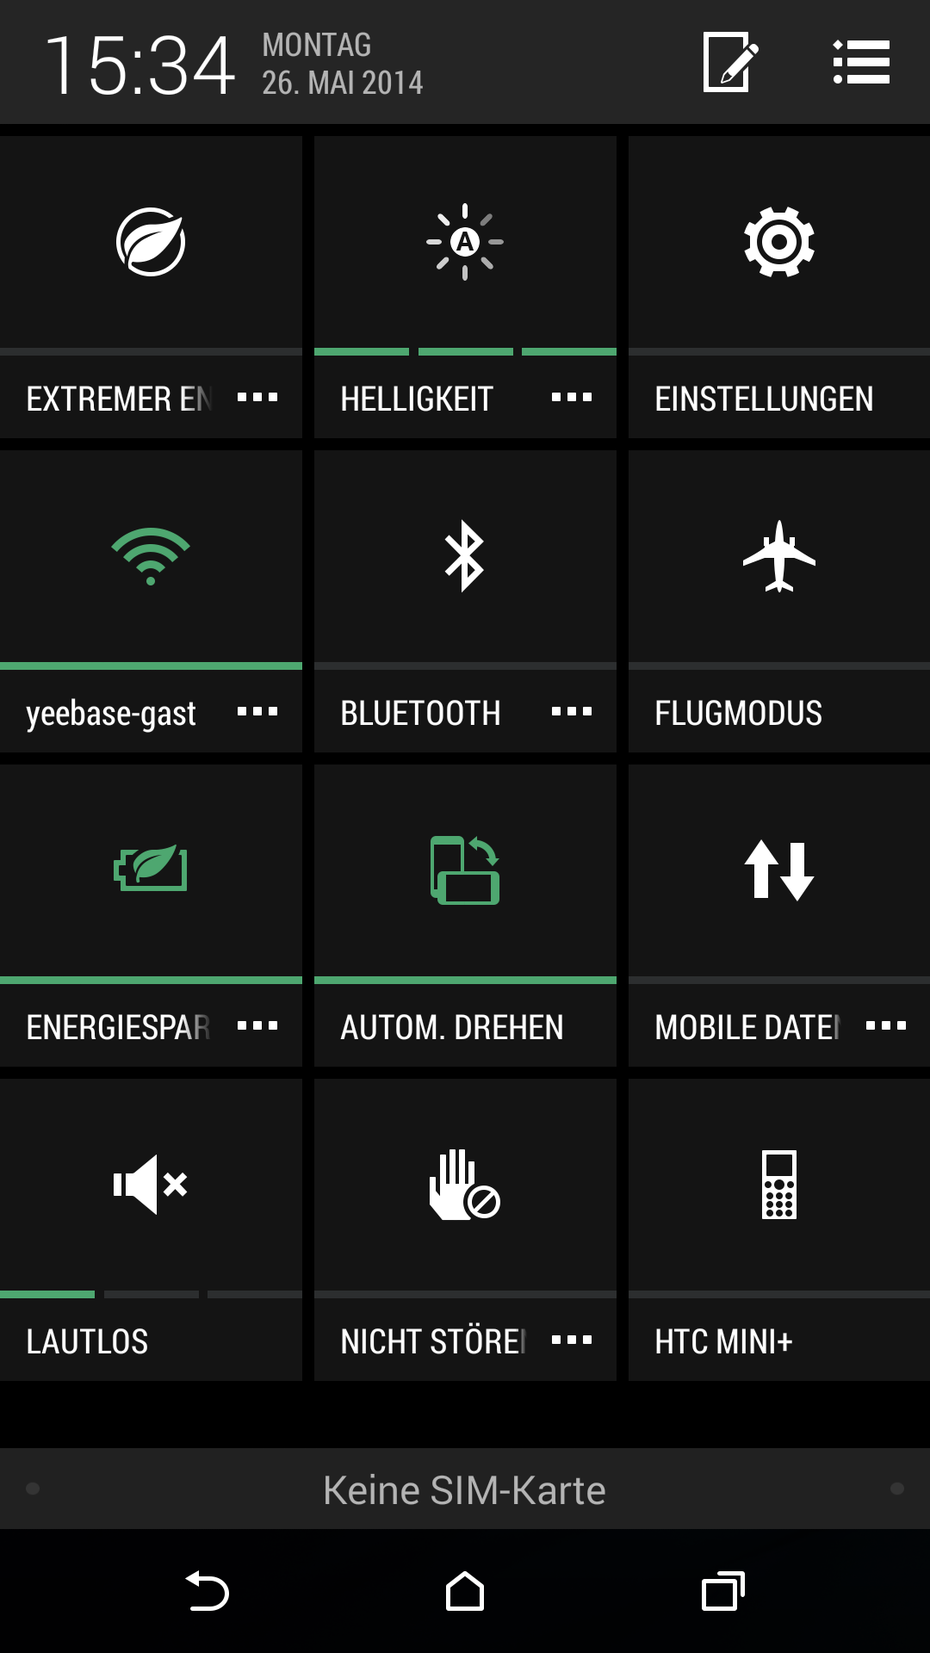 Ein Vorteil von HTC Sense gegenüber Stock-Android: Die Schnelleinstellungen lassen sich konfigurieren. (Screenshot: HTC One M8)